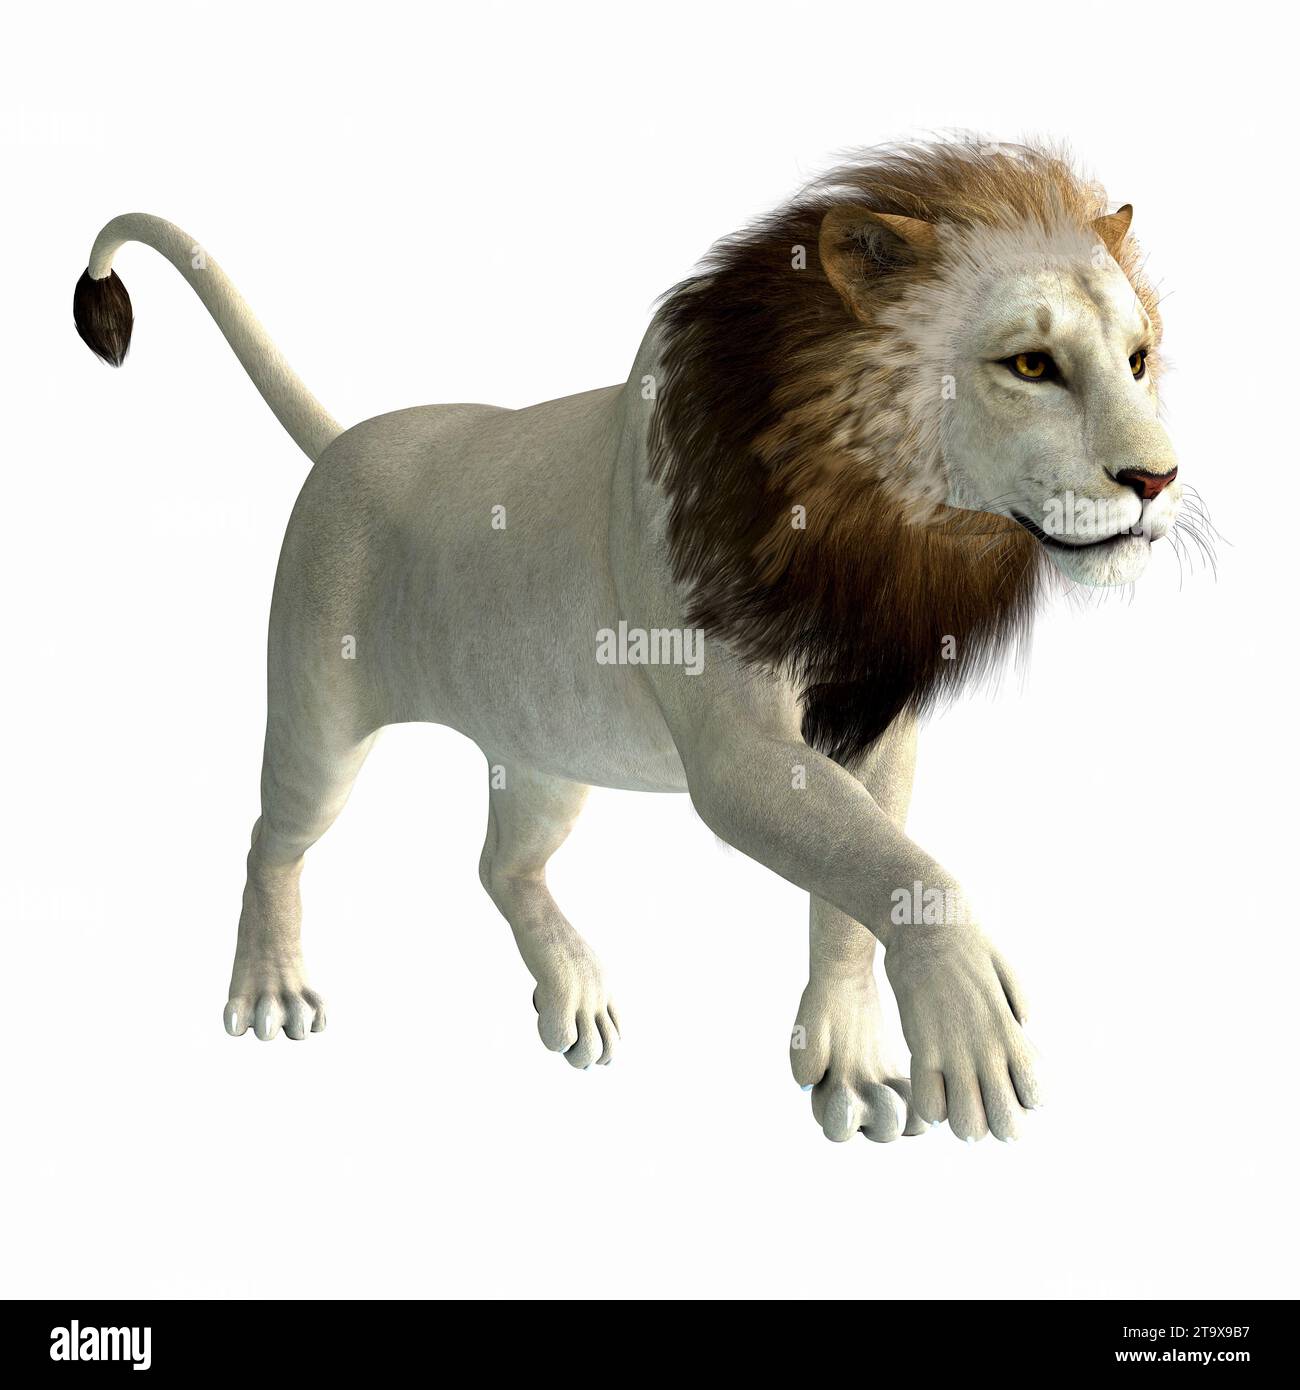 Der amerikanische Löwe lebte während der pleistozänen Zeit Nordamerikas als Megafauna-Raubtier. Stockfoto